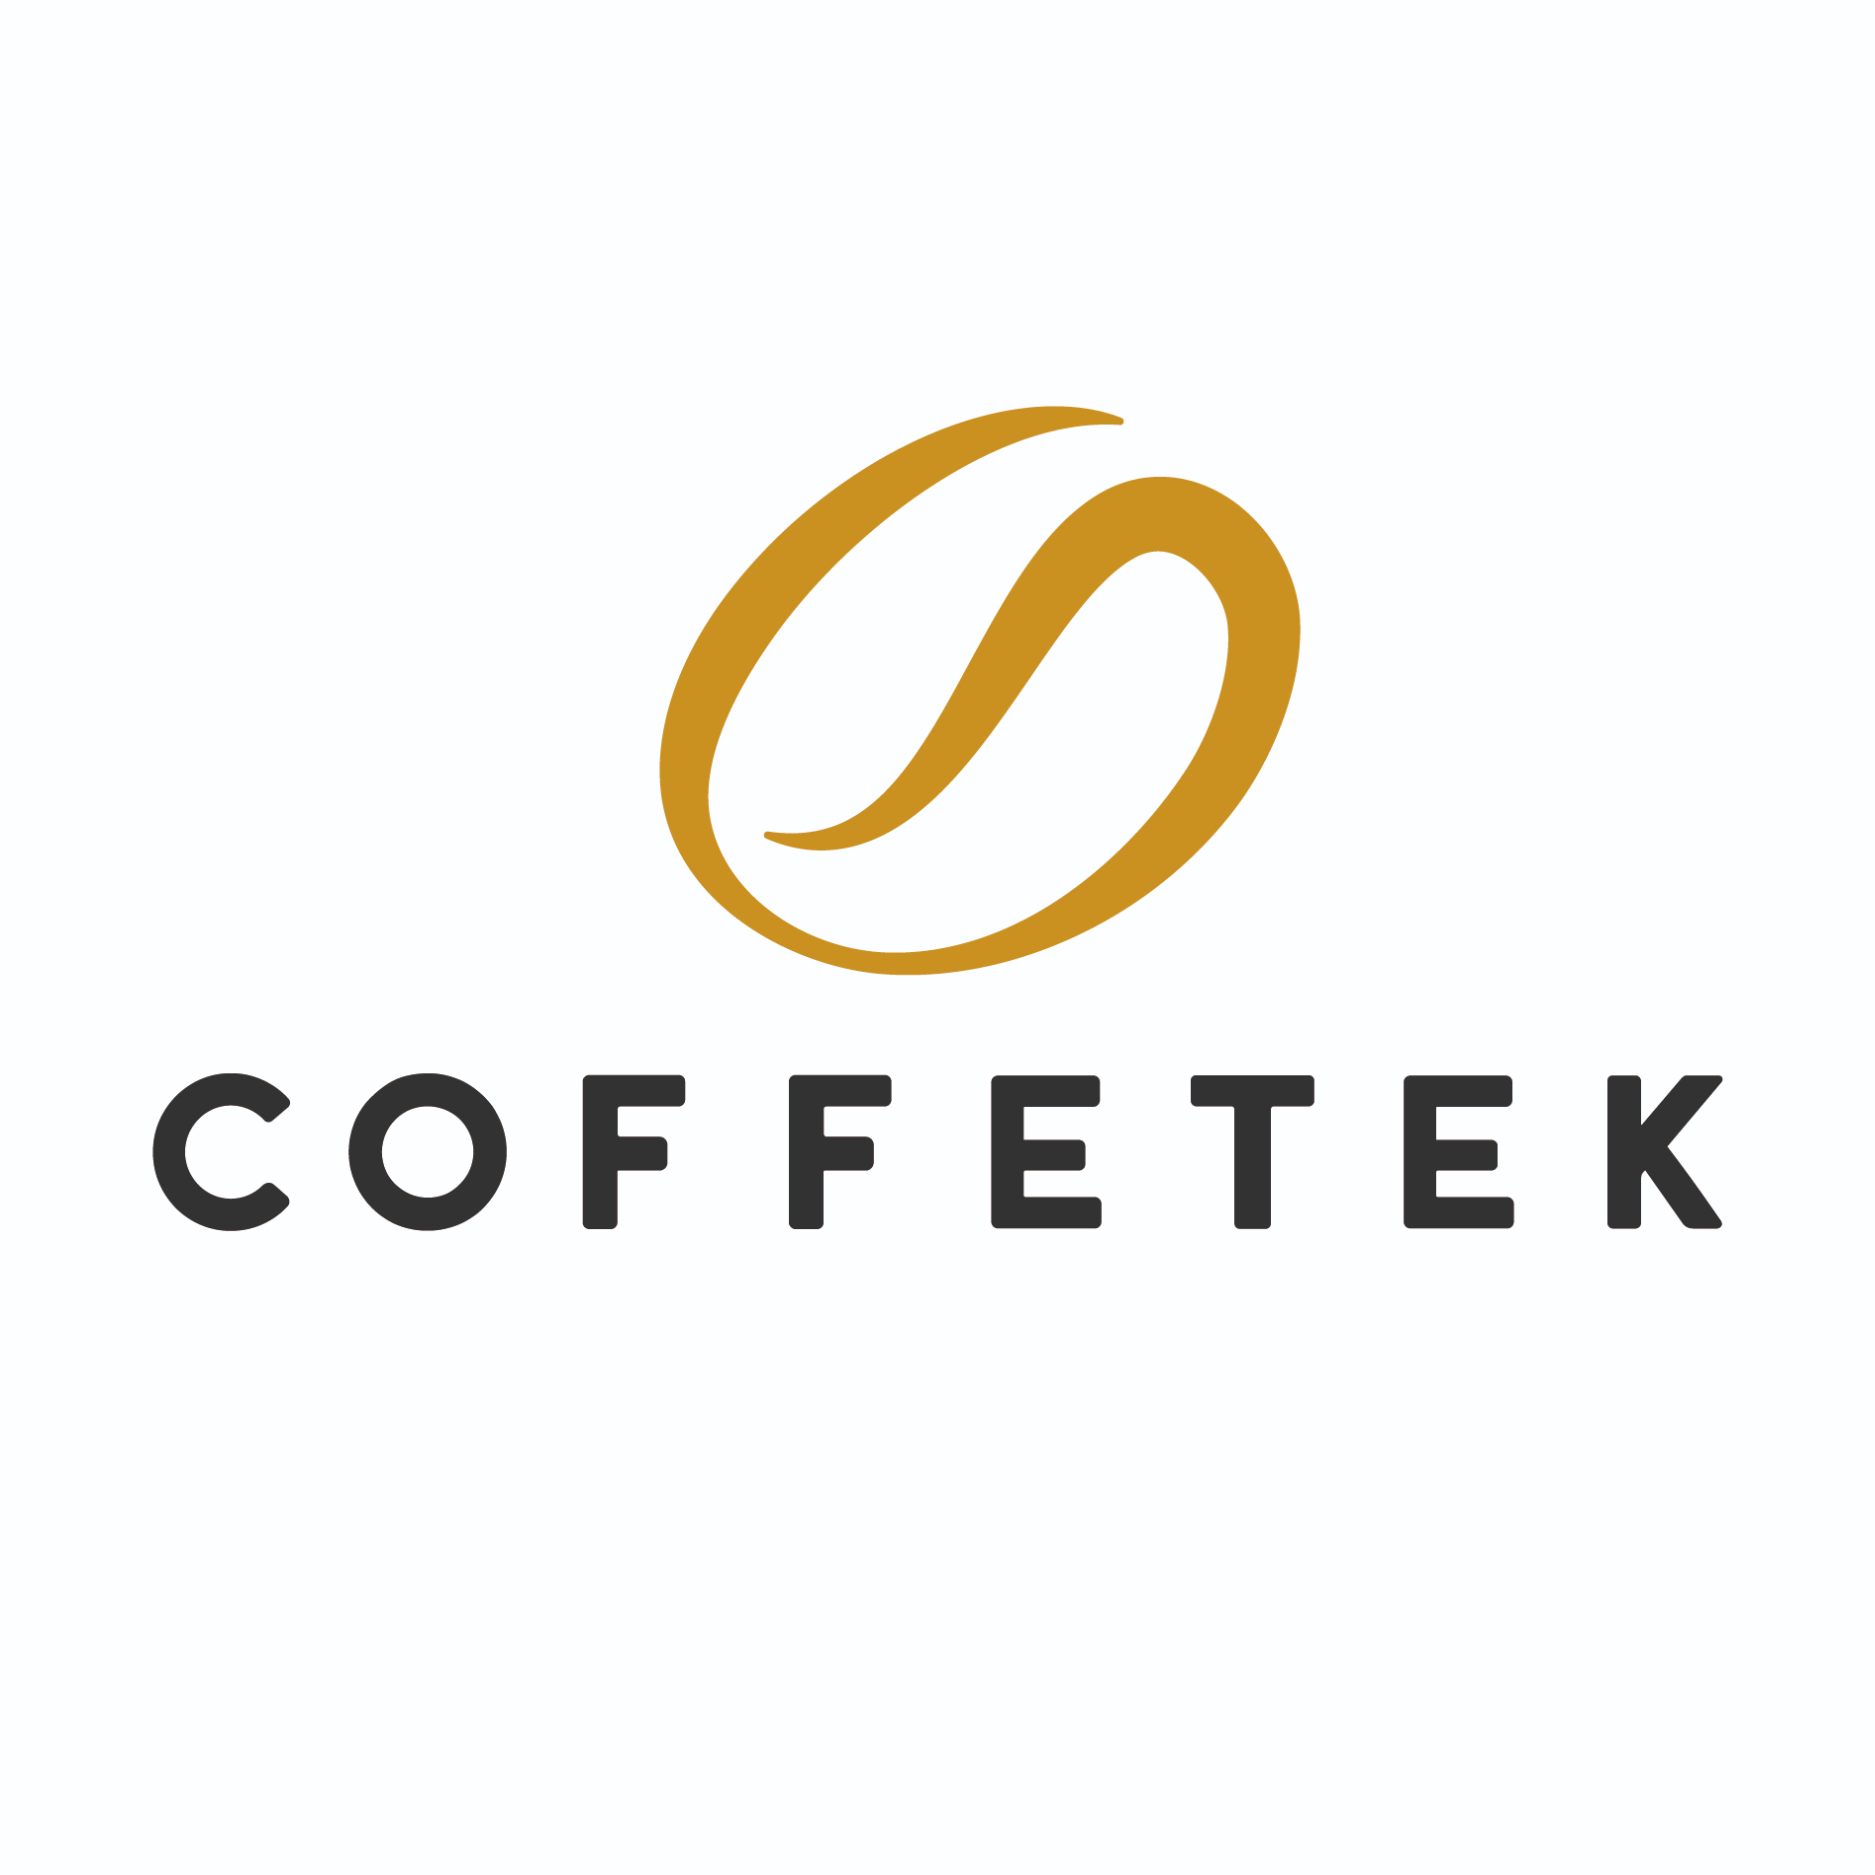 Coffeetek Brand Logo